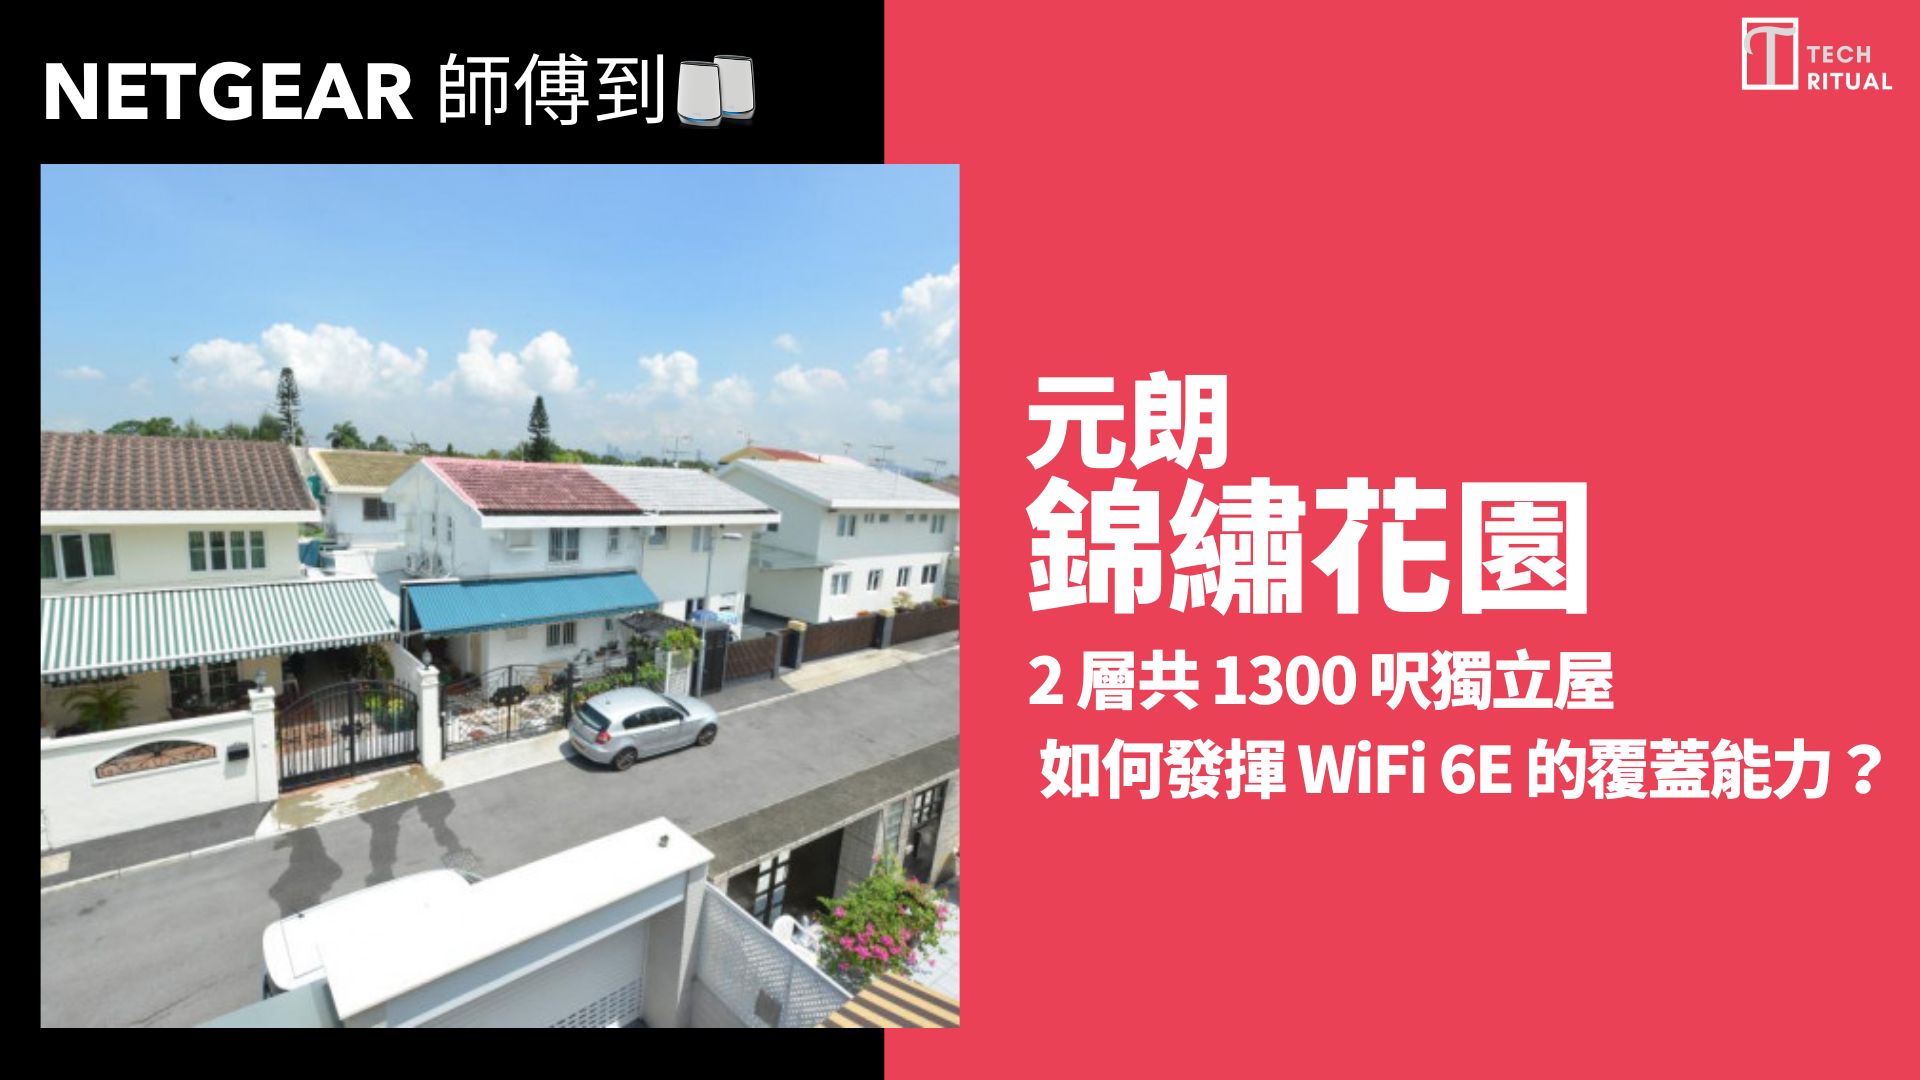 【NETGEAR 師傅到】043: 錦綉花園2層1300呎獨立屋 如何發揮WiFi 6E的覆蓋能力？